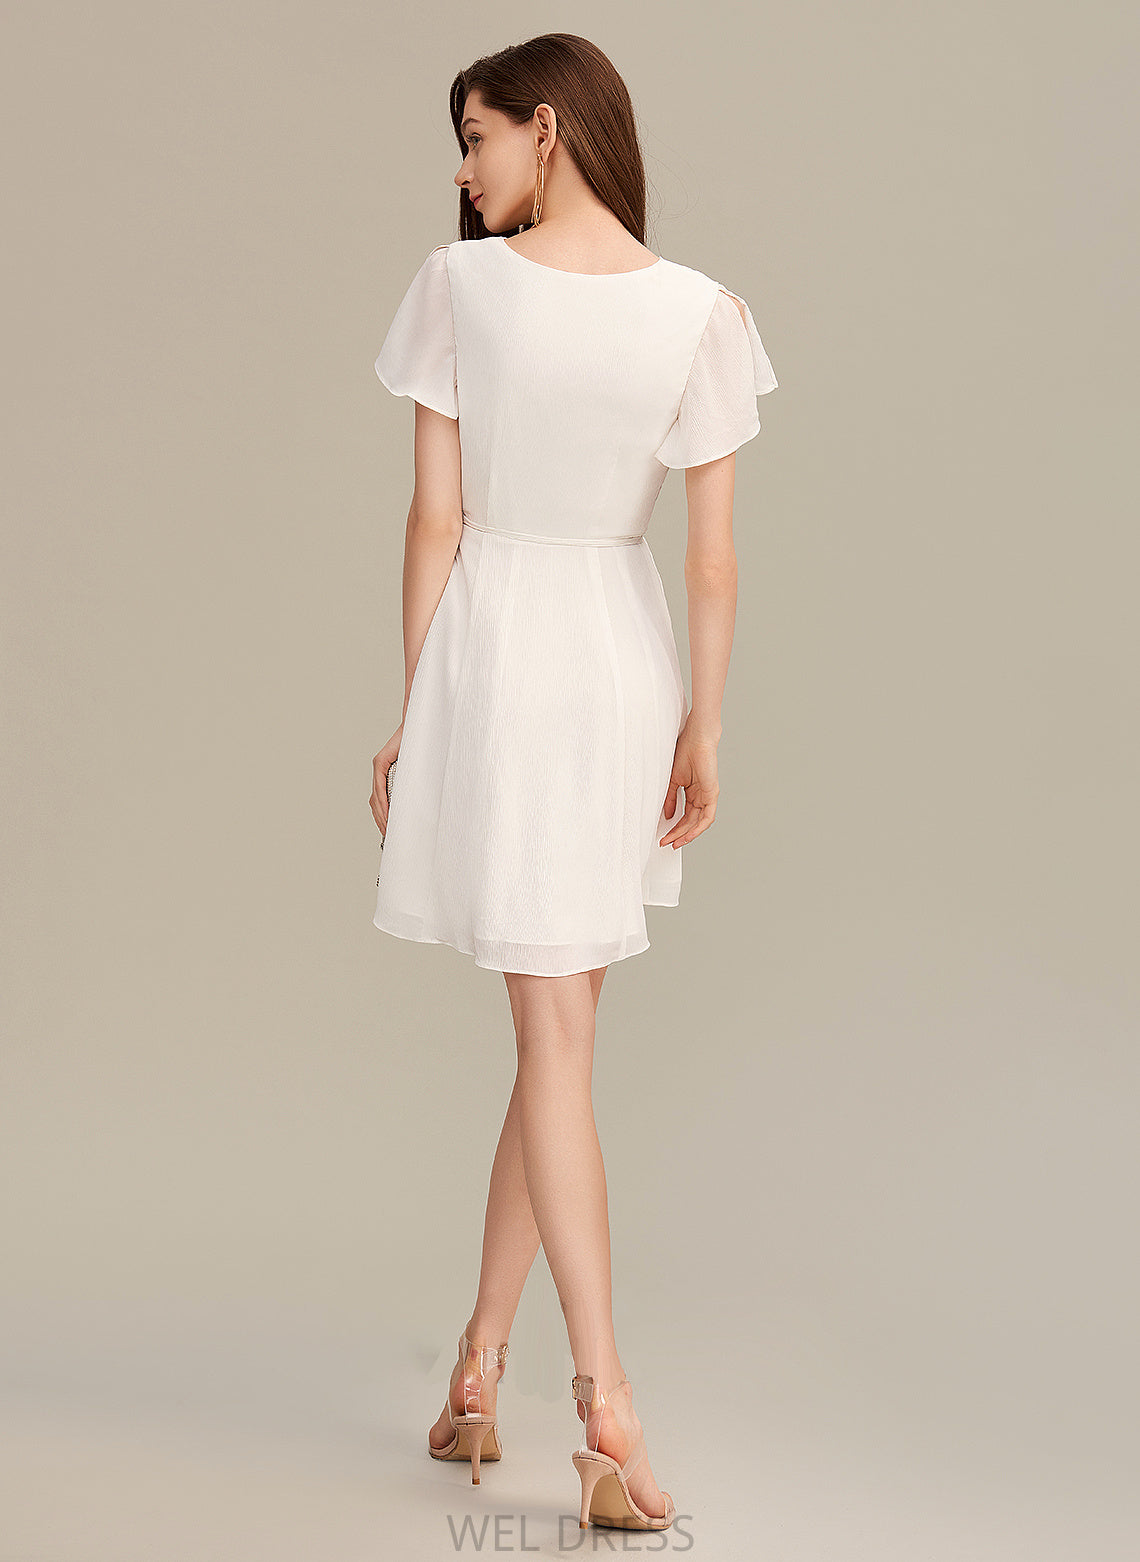 Ruffle Length Fabric A-Line Silhouette Neckline V-neck Embellishment Short/Mini Deanna A-Line/Princess Floor Length